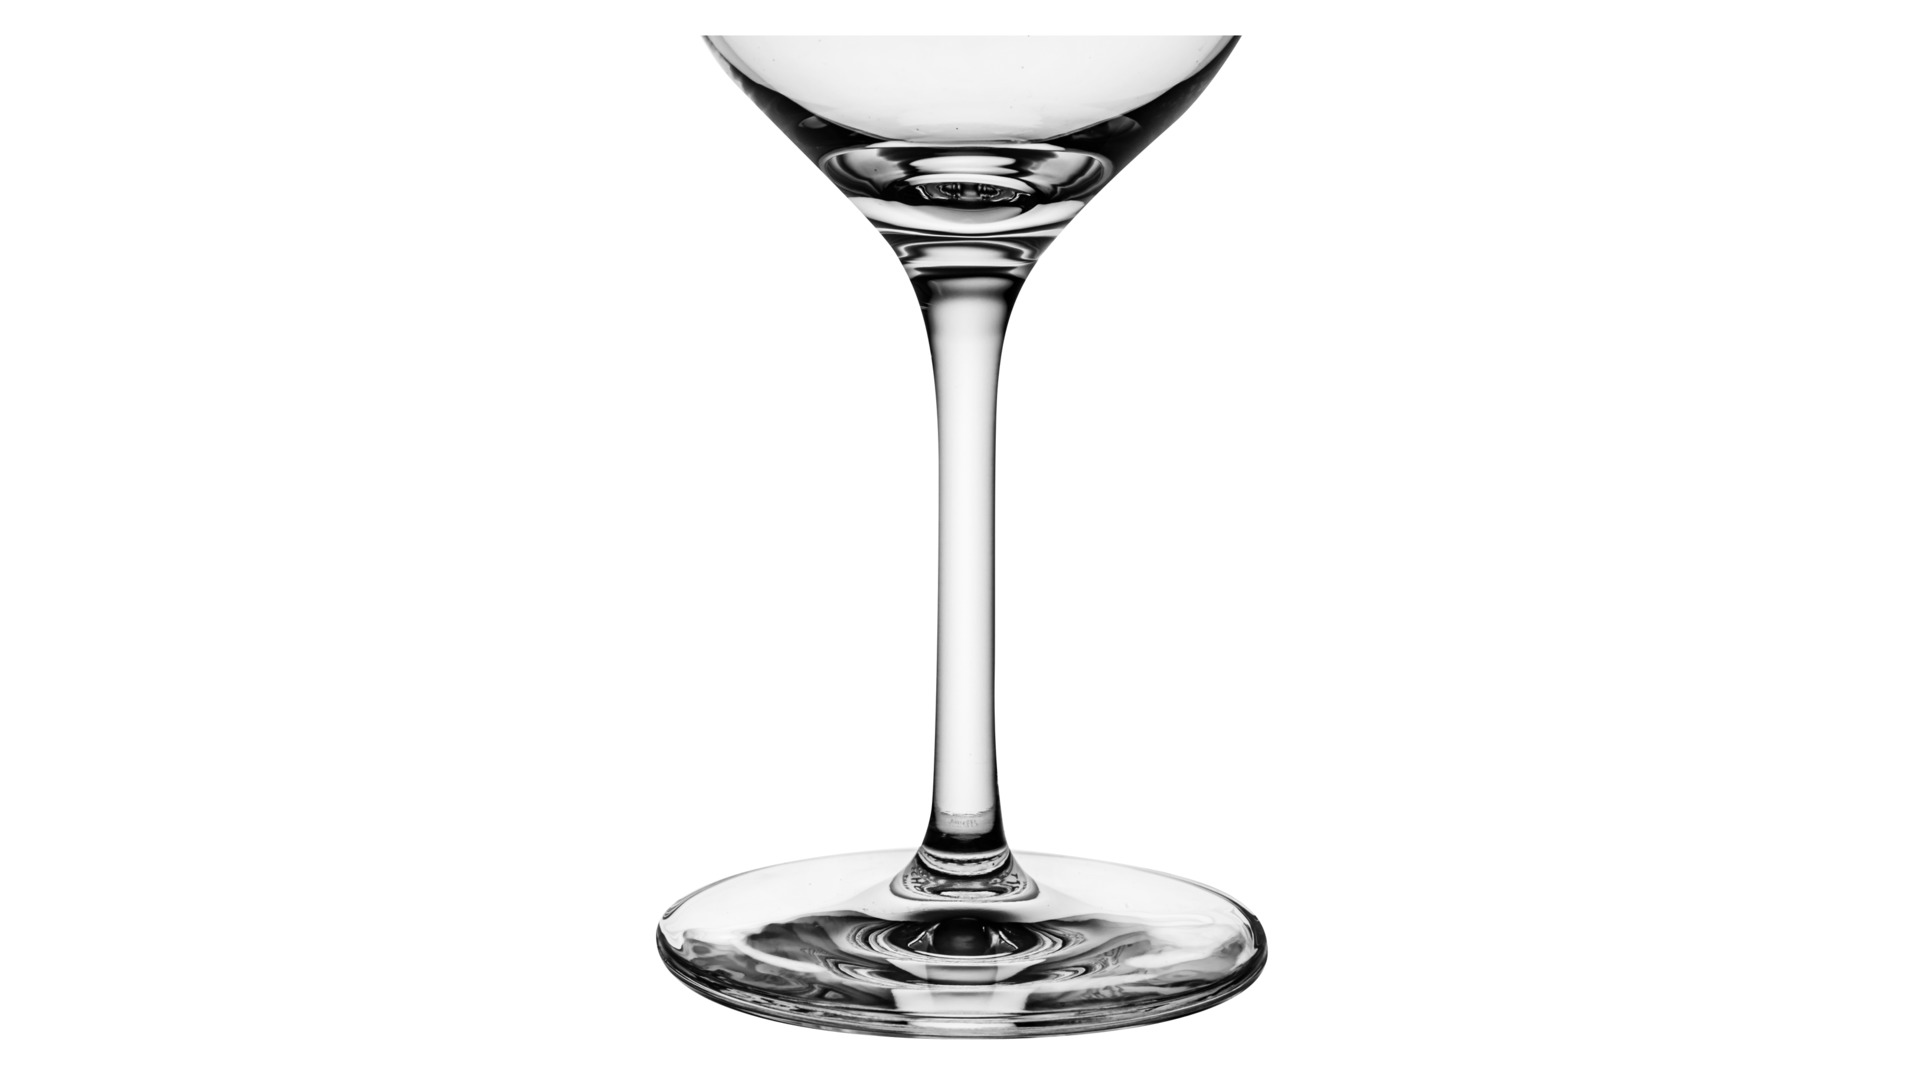 Набор бокалов Zwiesel Glas For You Любимые напитки на 4 персоны 16 предметов